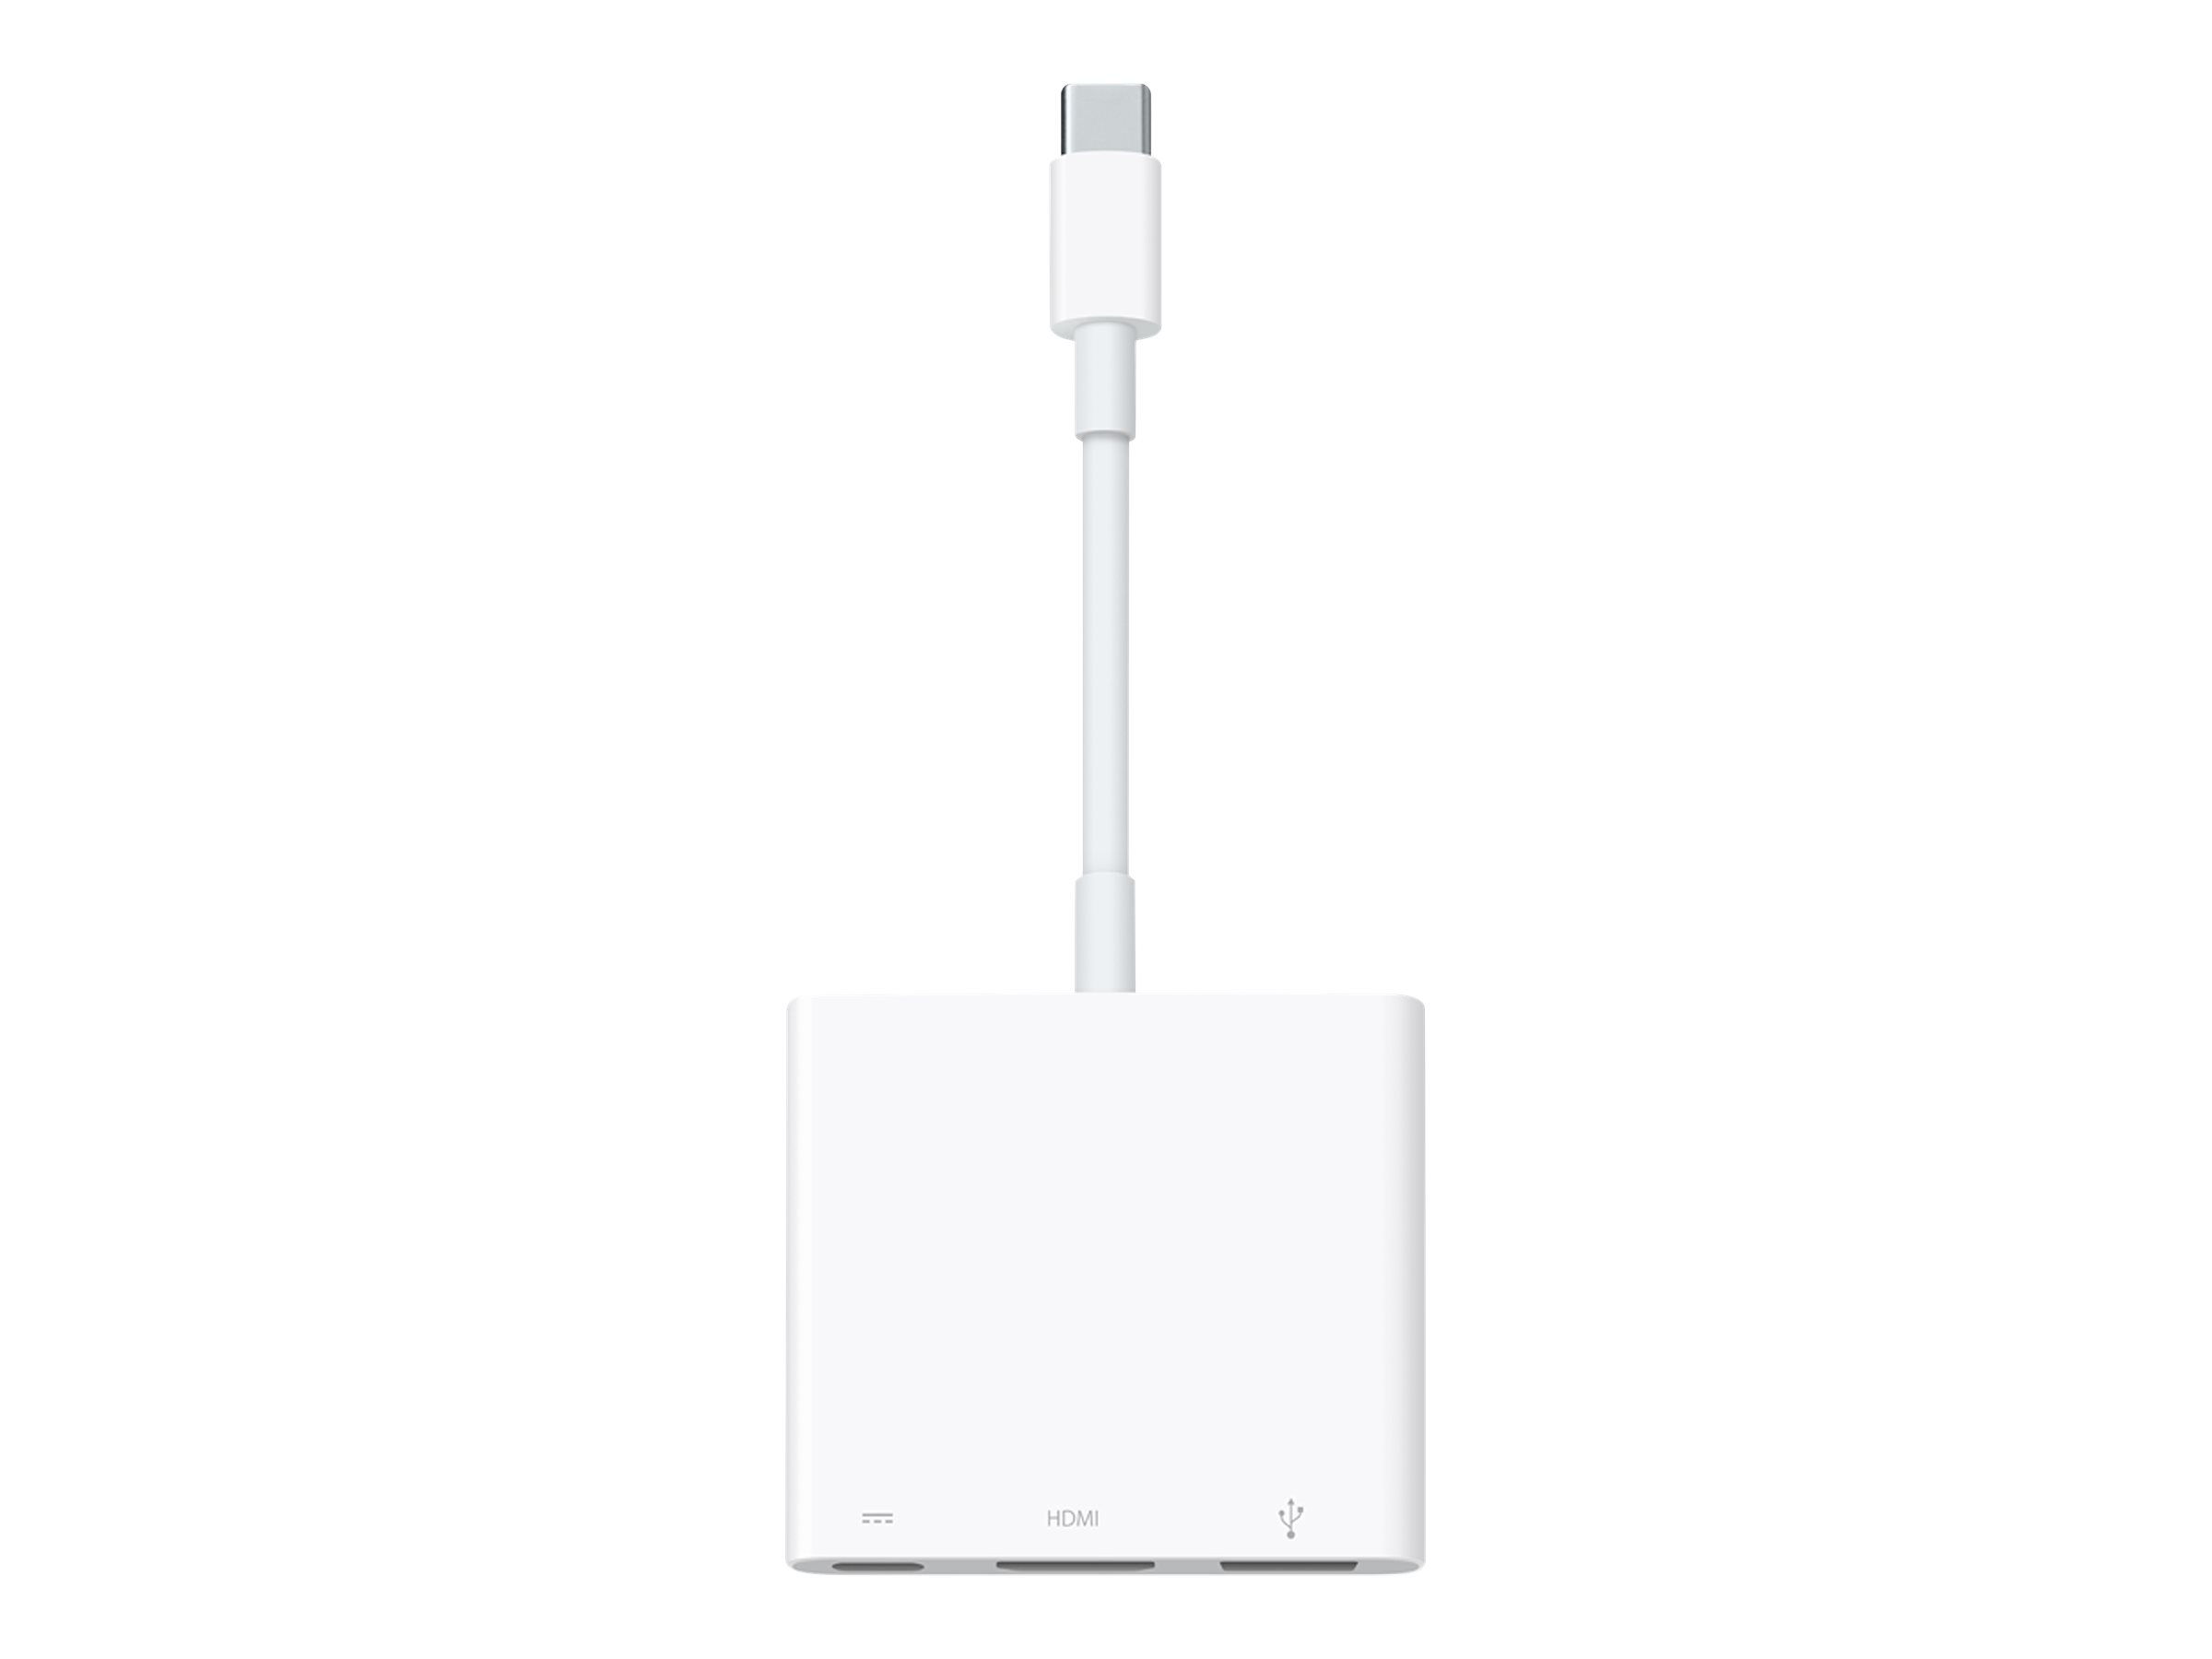 Apple Digital AV Multiport Adapter - Adaptateur vidéo - 24 pin USB-C mâle pour USB, HDMI, USB-C (alimentation uniquement) femelle - support 4K - MUF82ZM/A - Accessoires pour téléviseurs